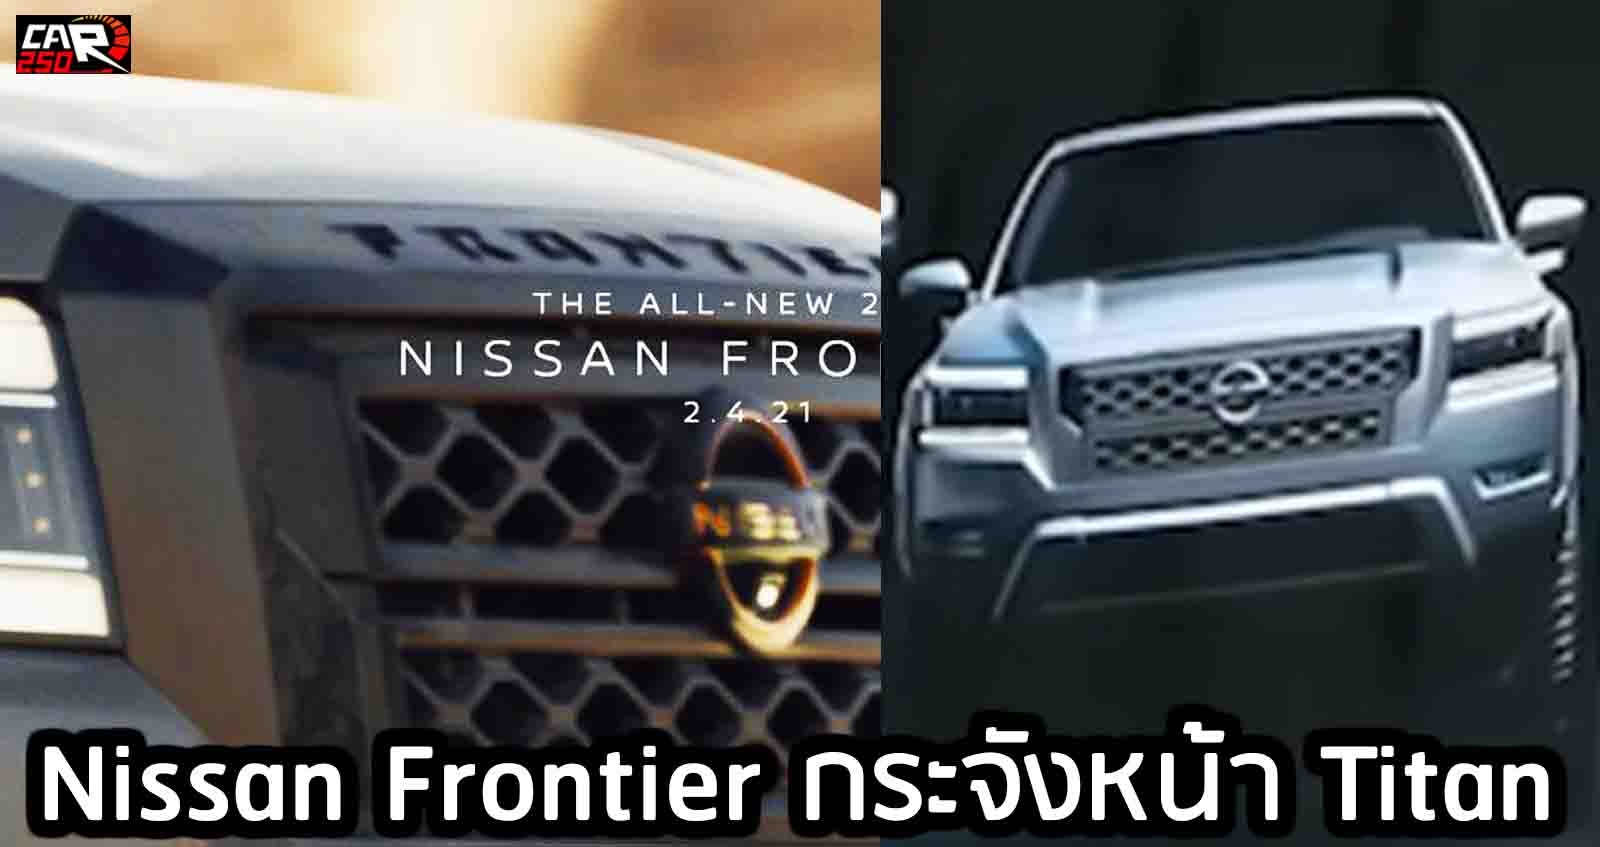 ทีเซอร์แรก Nissan Frontier กระจังหน้า Titan